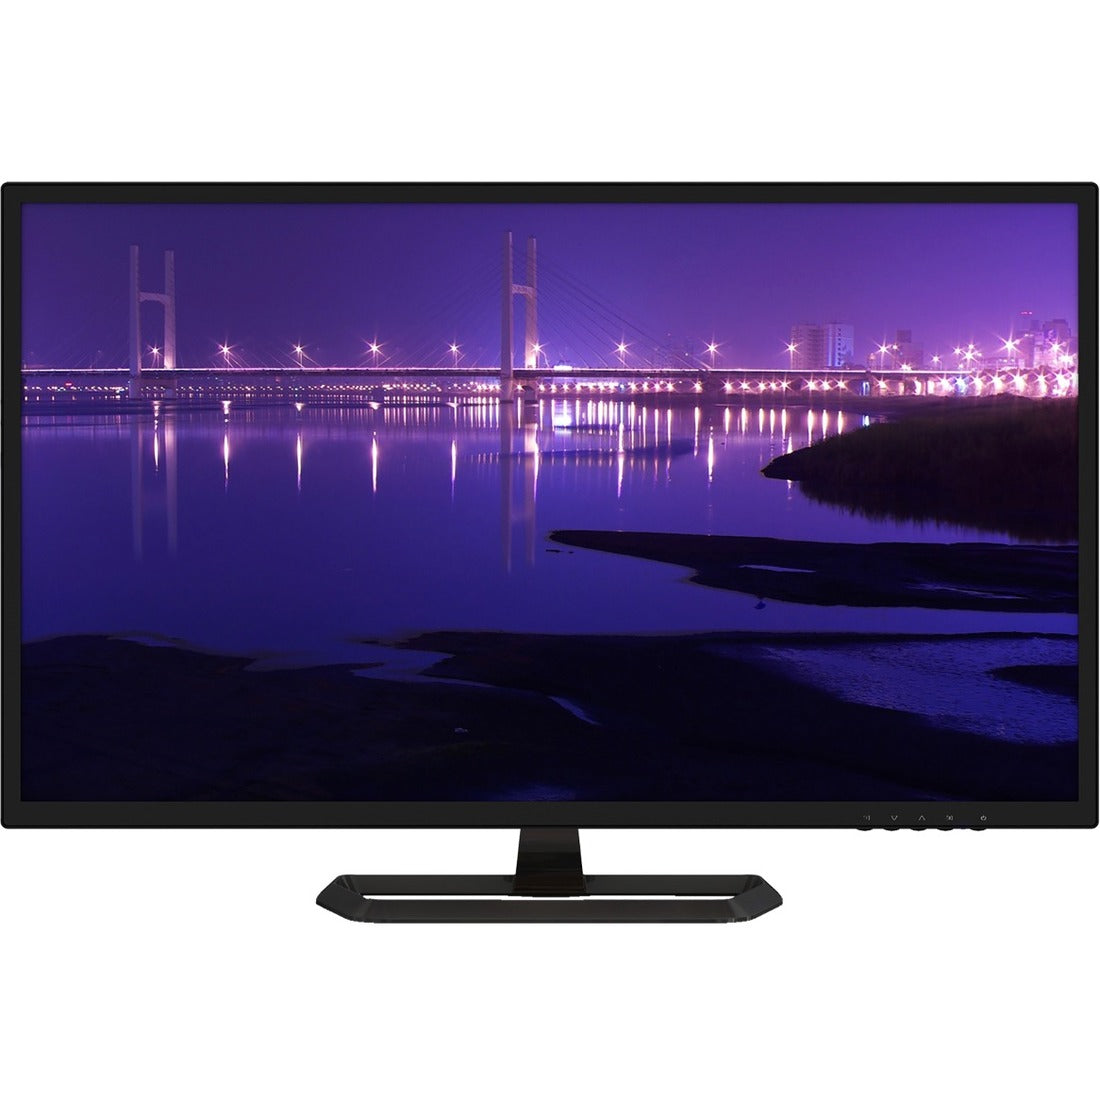 Planar PXL3280W 32" Class WQHD LCD Monitor - 16:9 - Black - 997-8425-01